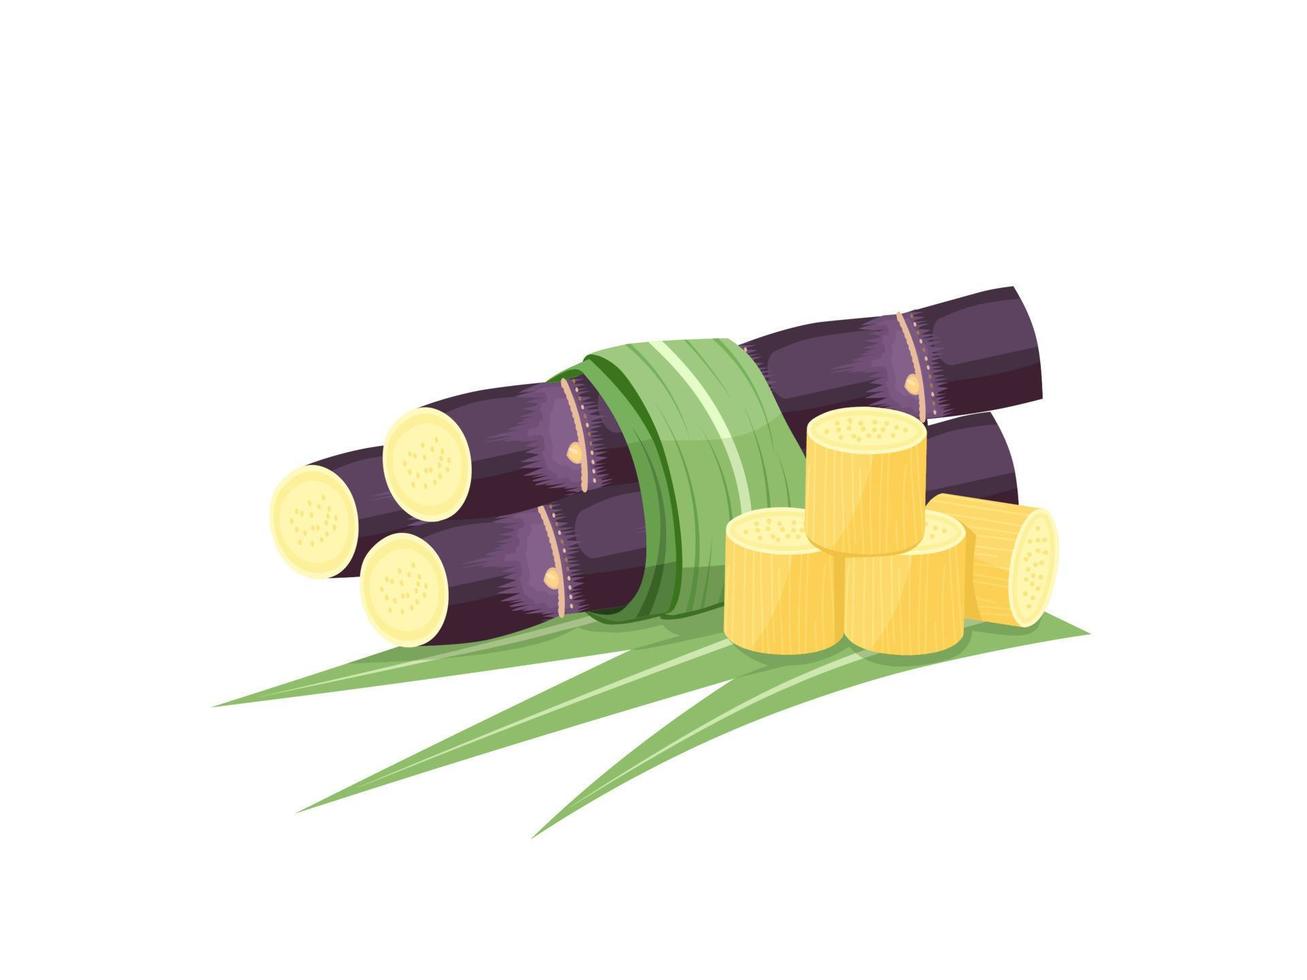 illustration vectorielle de canne à sucre, isolée sur fond blanc, adaptée comme étiquette d'emballage pour les produits transformés à base de canne à sucre. vecteur